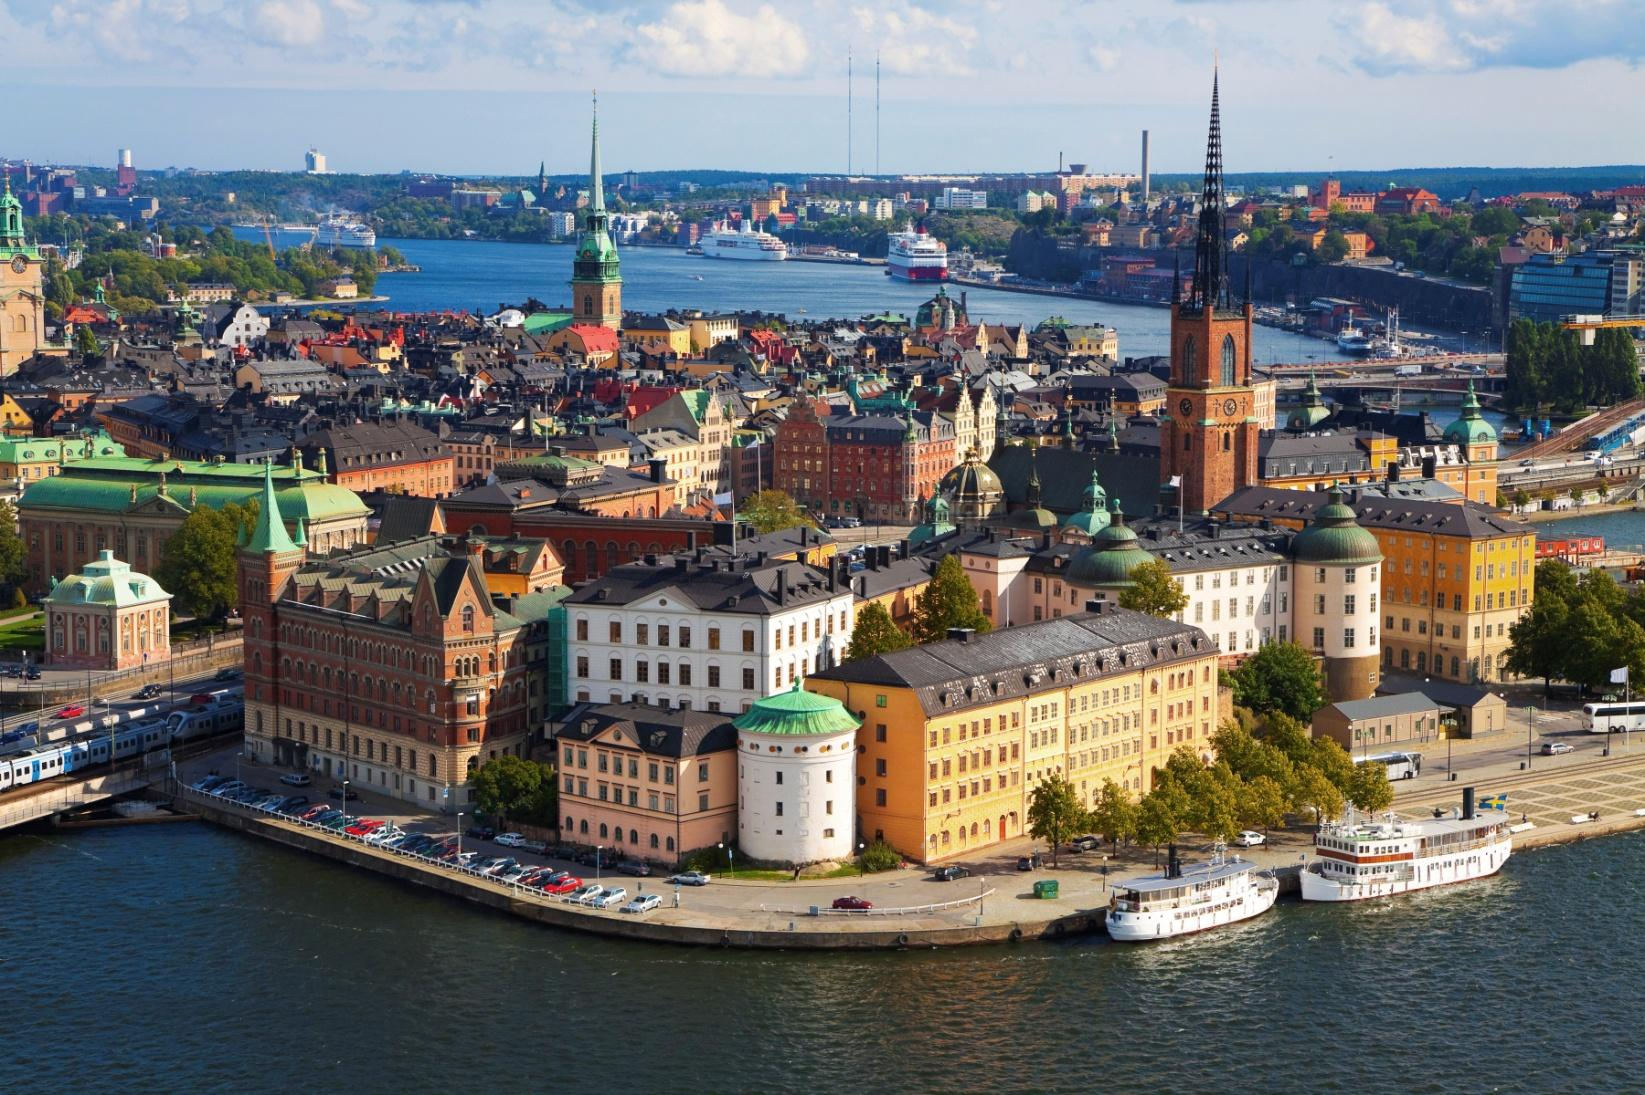 Bienvenidos a Estocolmo! La hermosa capital sueca se encuentra en un archipiélago de unas 24.000 islas e islotes.